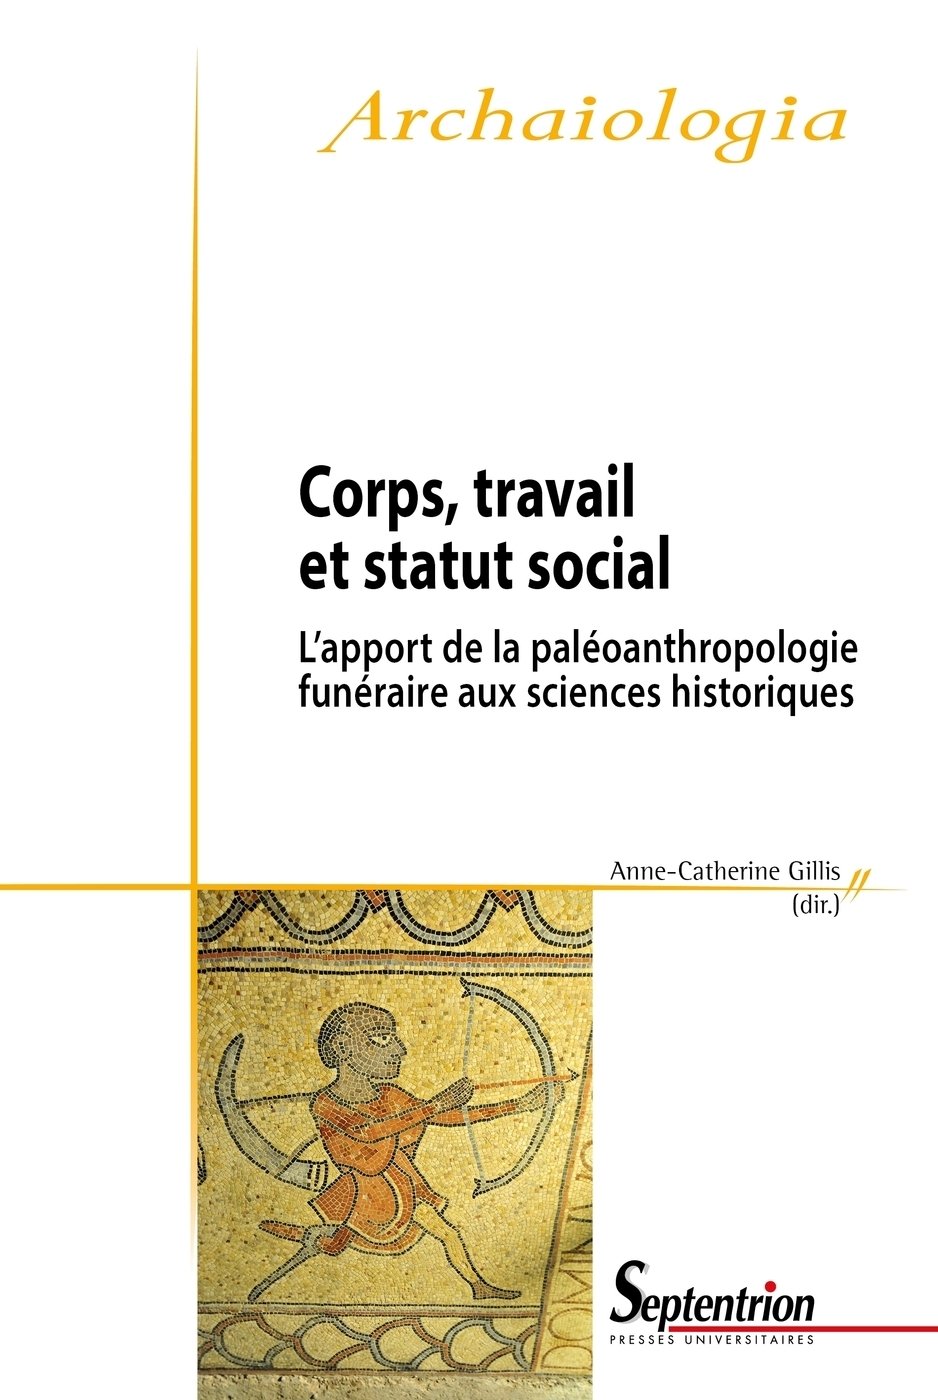 Corps, travail et statut social. L'apport de la paléoanthropologie funéraire aux sciences historiques, 2014, 212 p. 